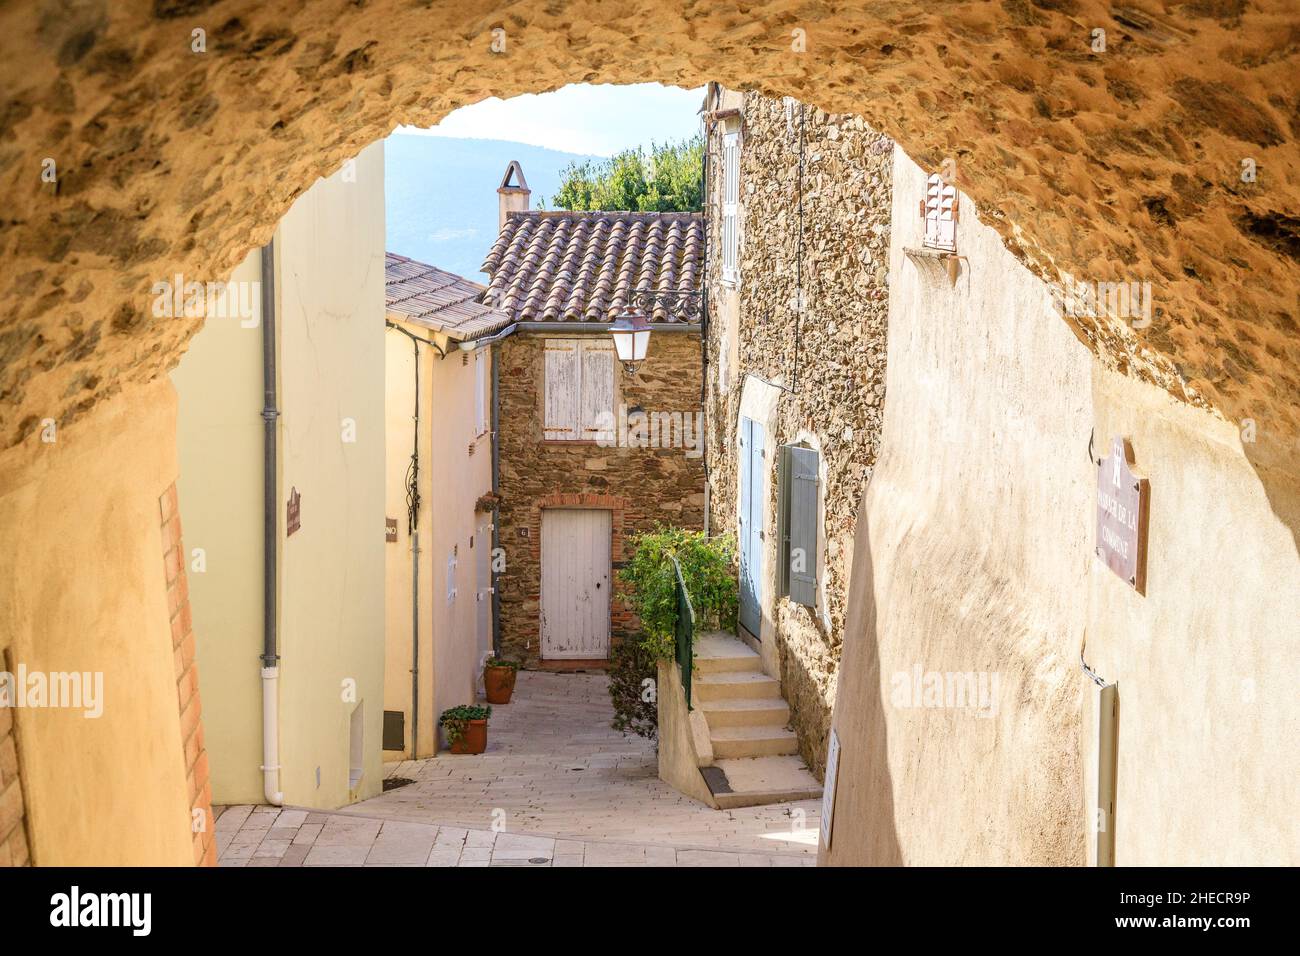 Frankreich, Var, Golf von Saint Tropez, Gassin, beschriftet Les Plus Beaux Villages de France (die schönsten Dörfer Frankreichs), Gasse im Dorf // Stockfoto